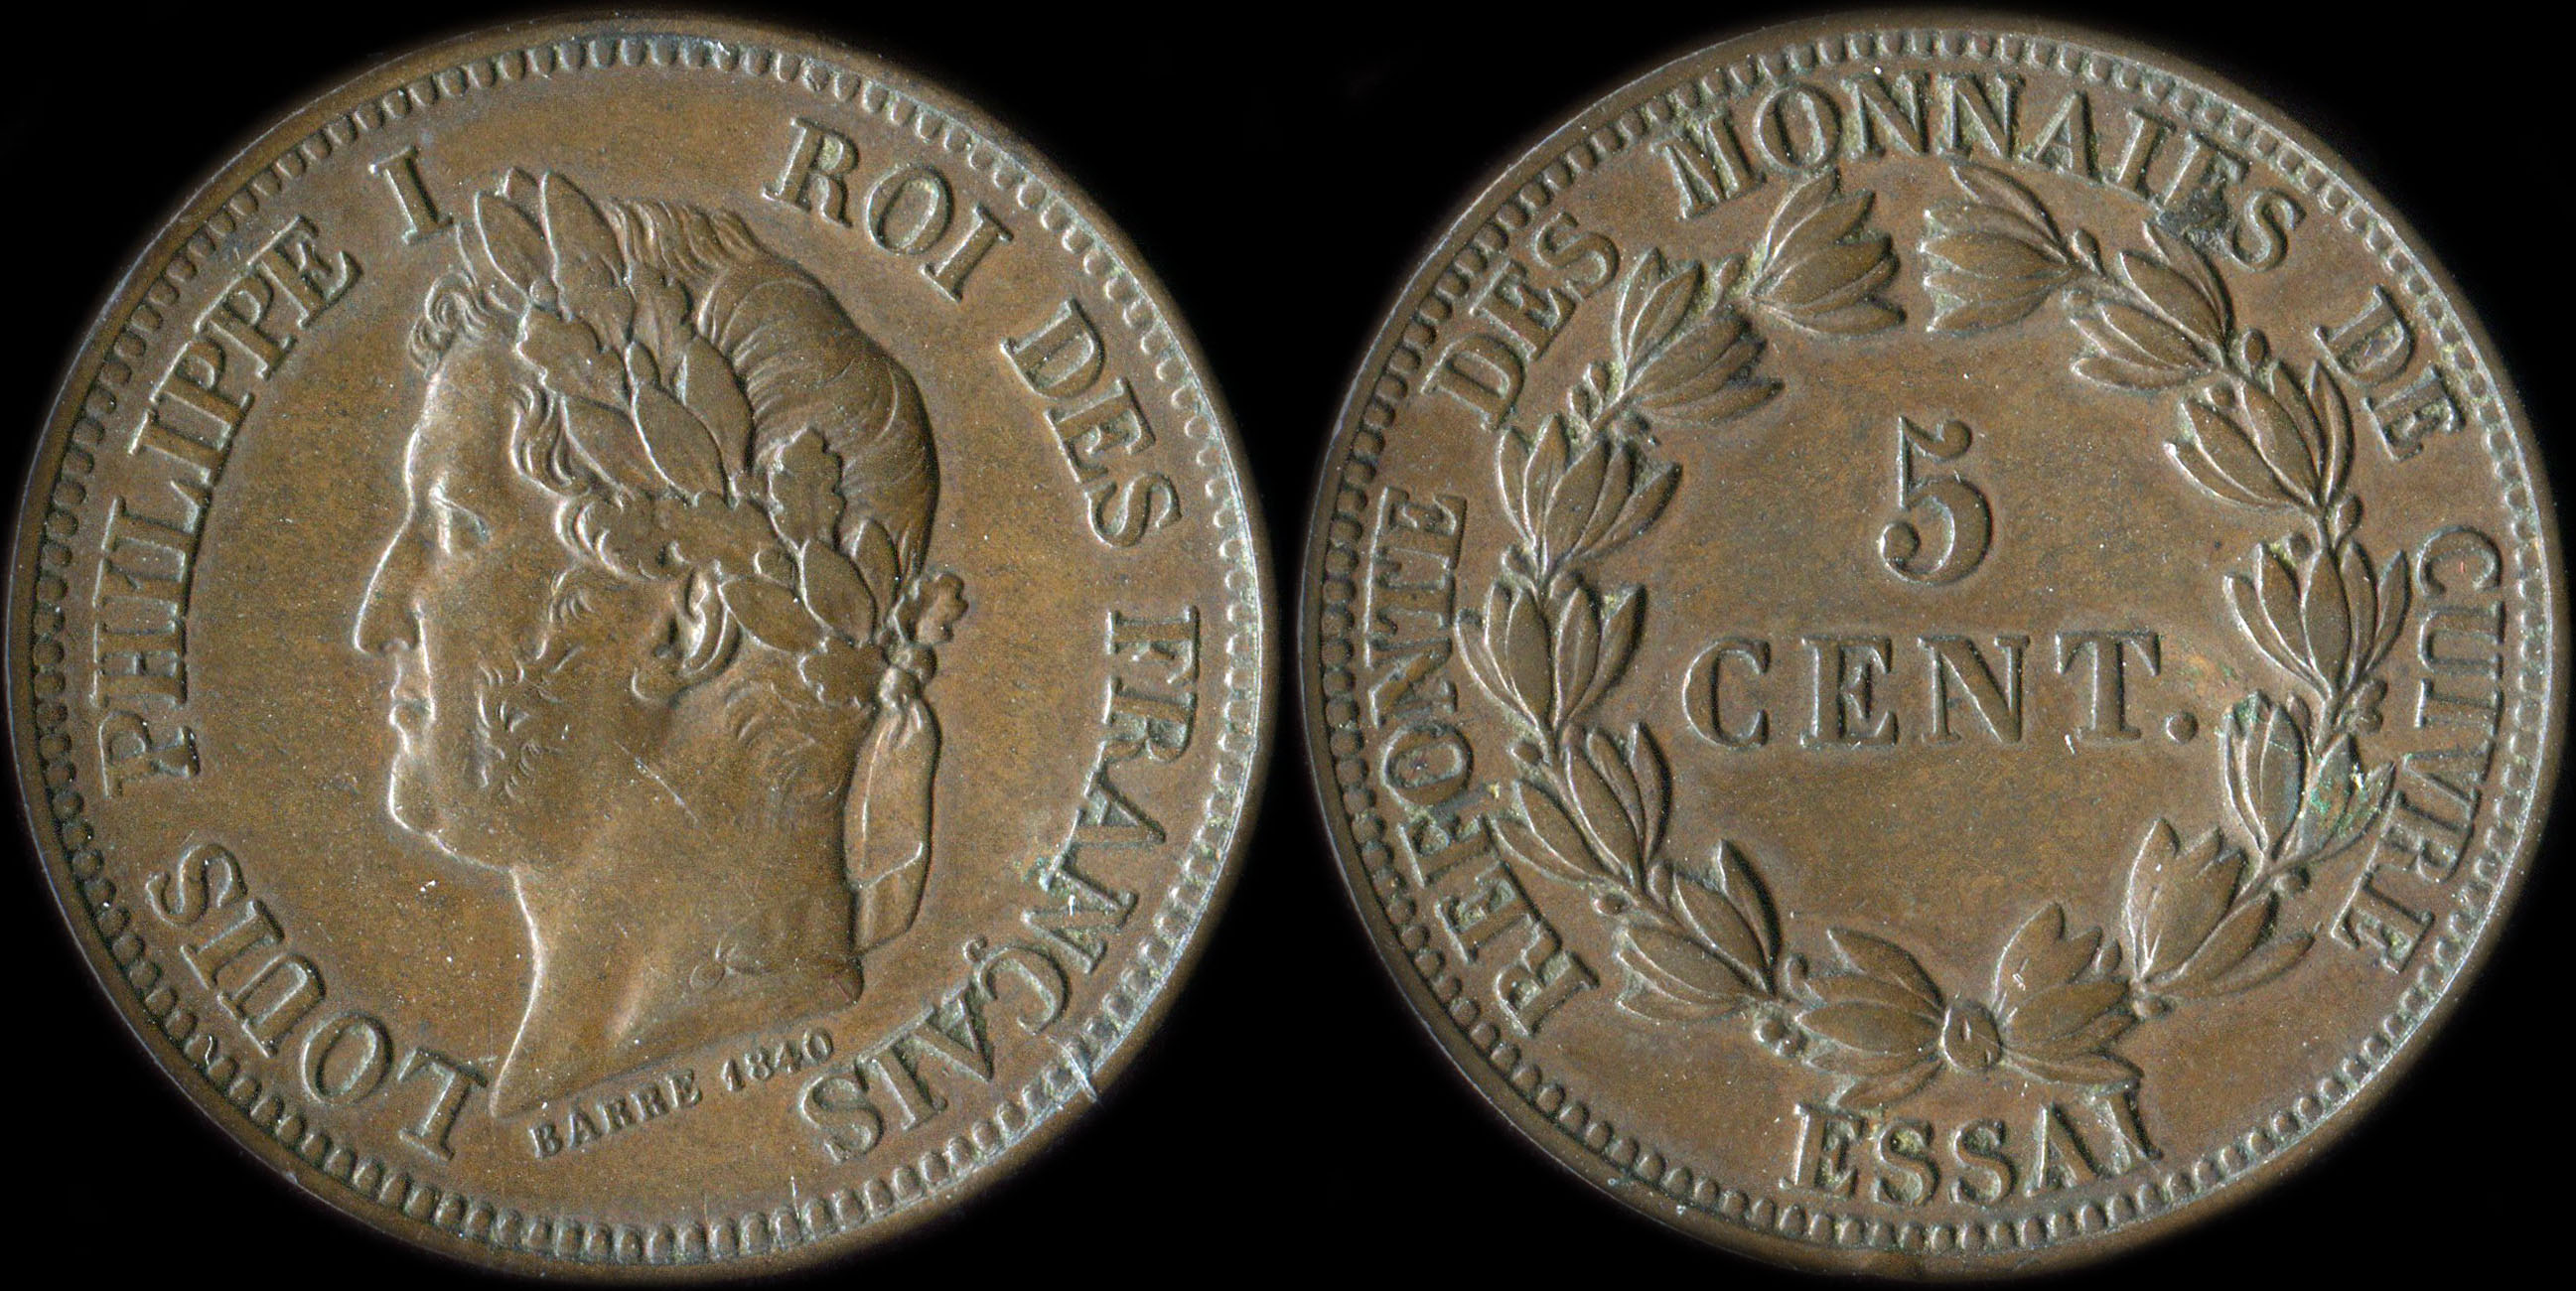 Pice d'essai Louis Philippe I - Roi des franais - Refonte des monnaies de cuivre -  5 cent. 1840 - Cuivre - 7,40 grammes - 27,5 mm - tranche lisse - graveur: Barre